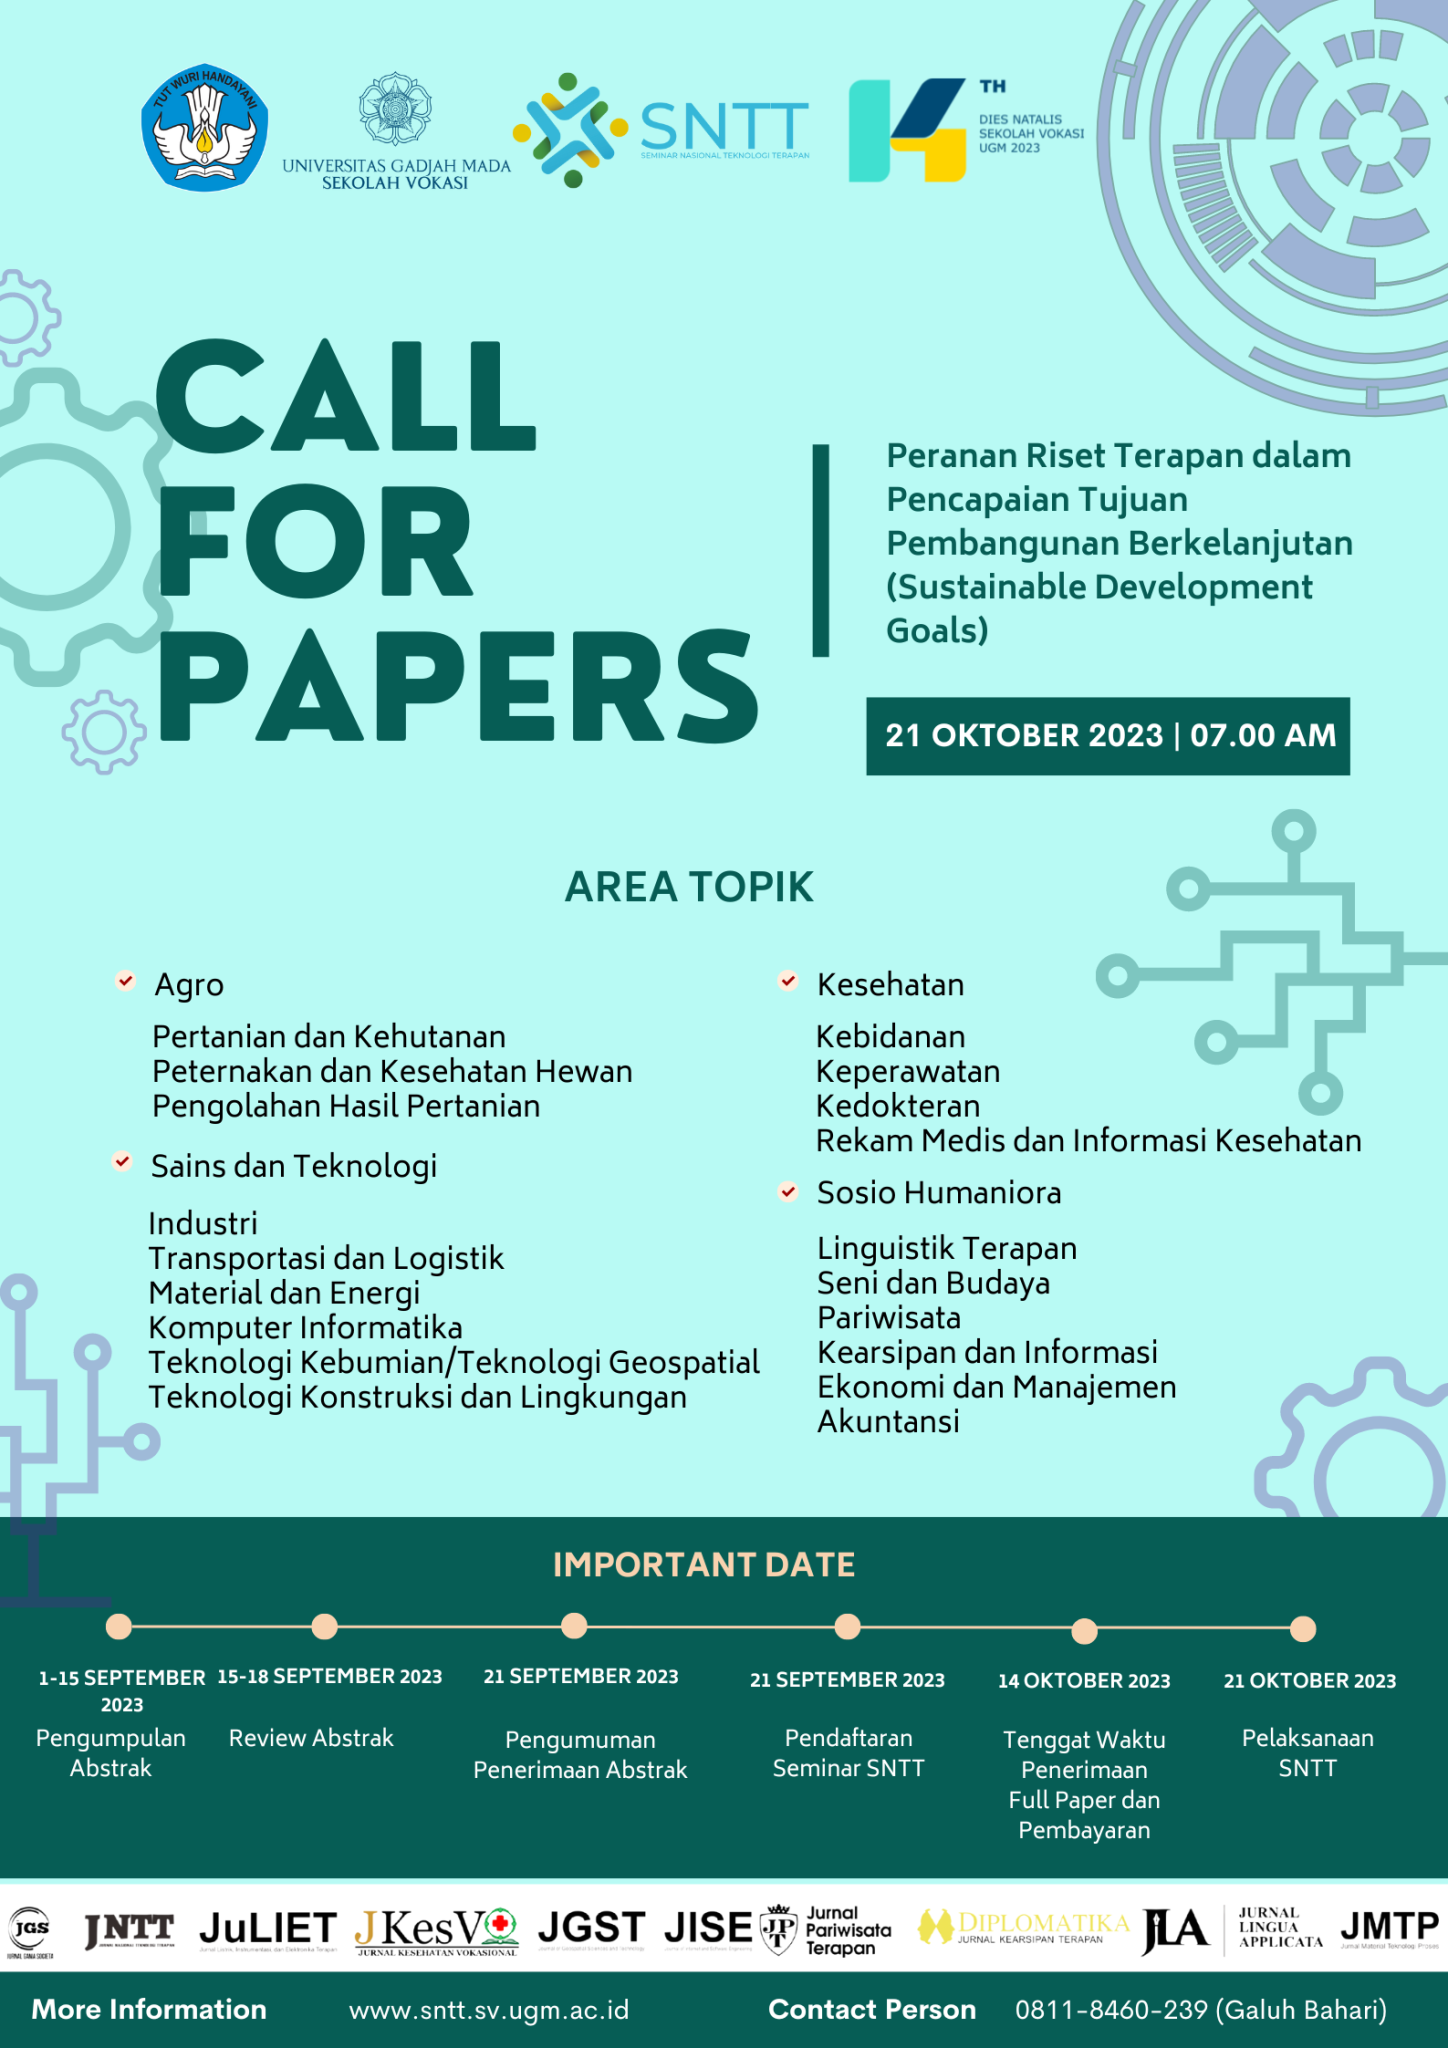 Call for Papers Seminar Nasional Teknologi Terapan 2023 sntt.sv.ugm.ac.id